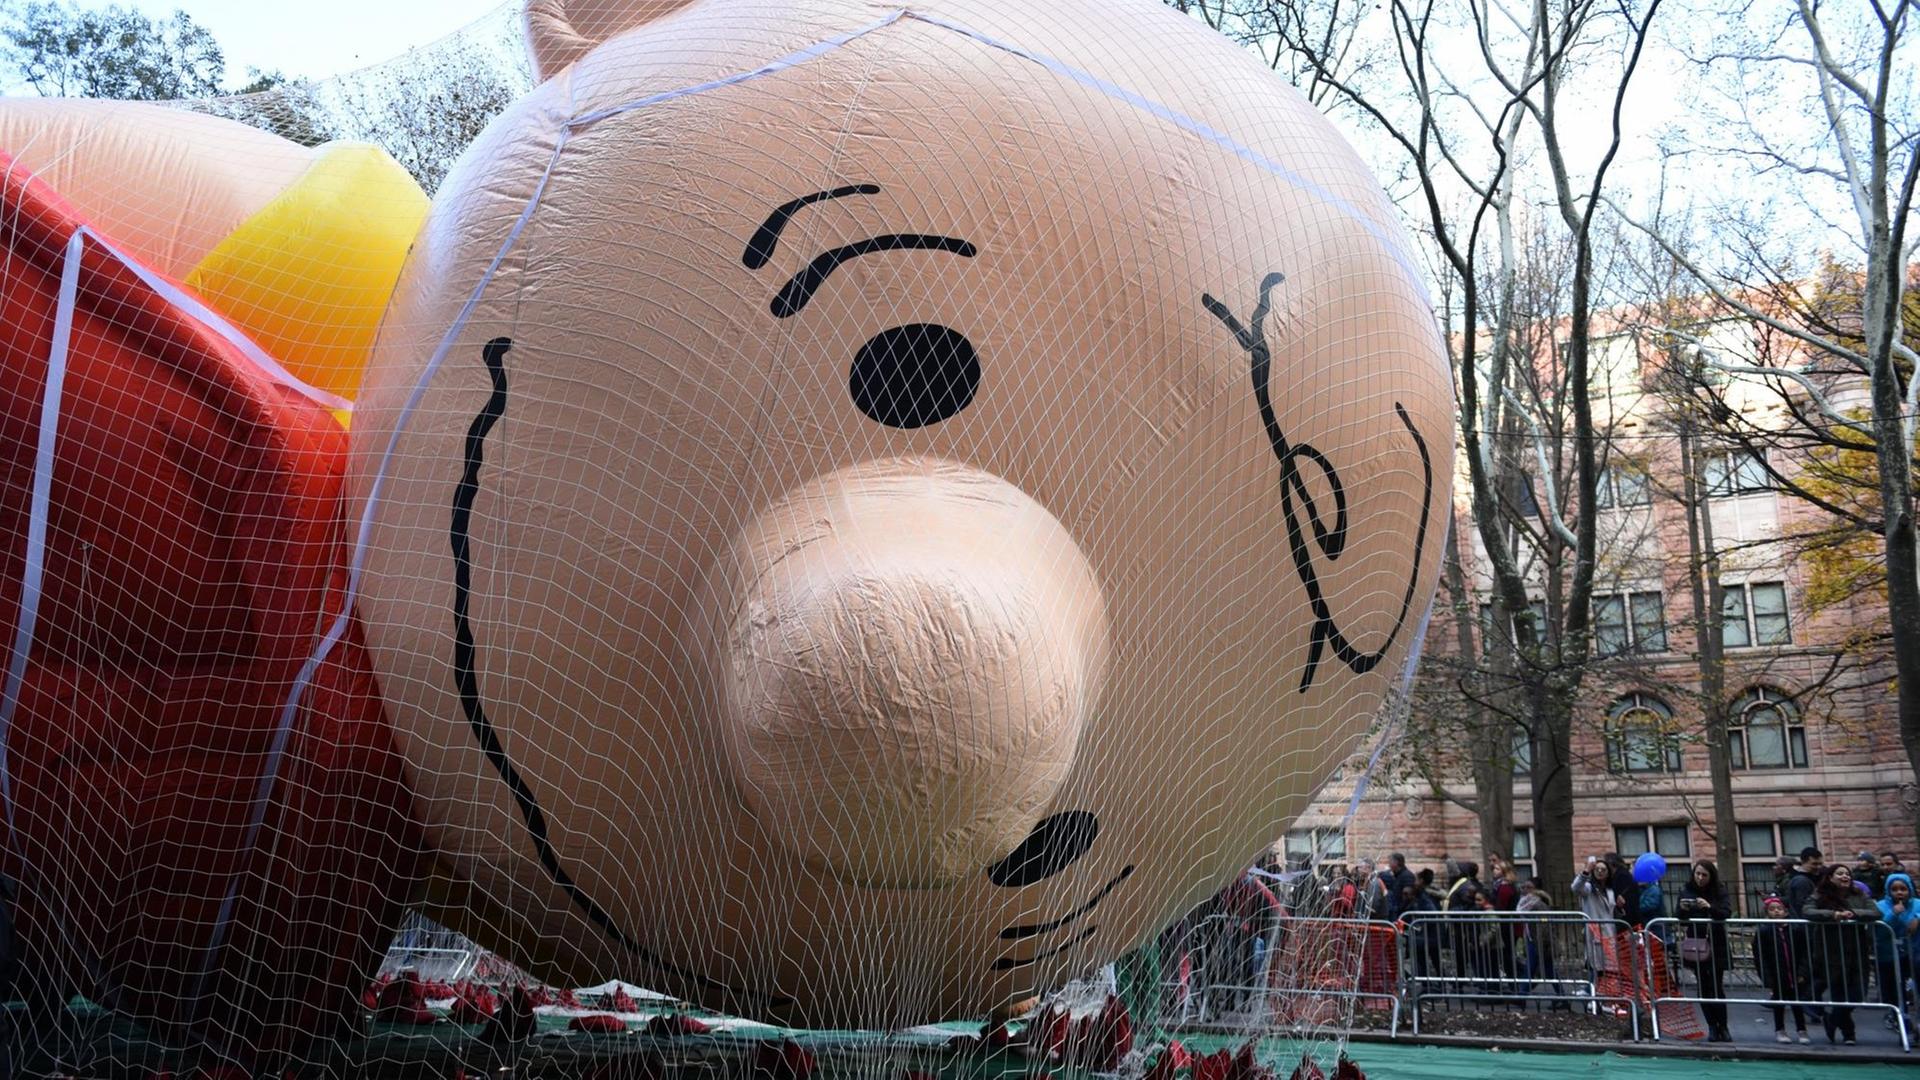 Der Charlie-Brown-Ballon für die Festtagsparade des Kaufhauses Macy's zu Thanksgiving in New York wird aufgeblasen